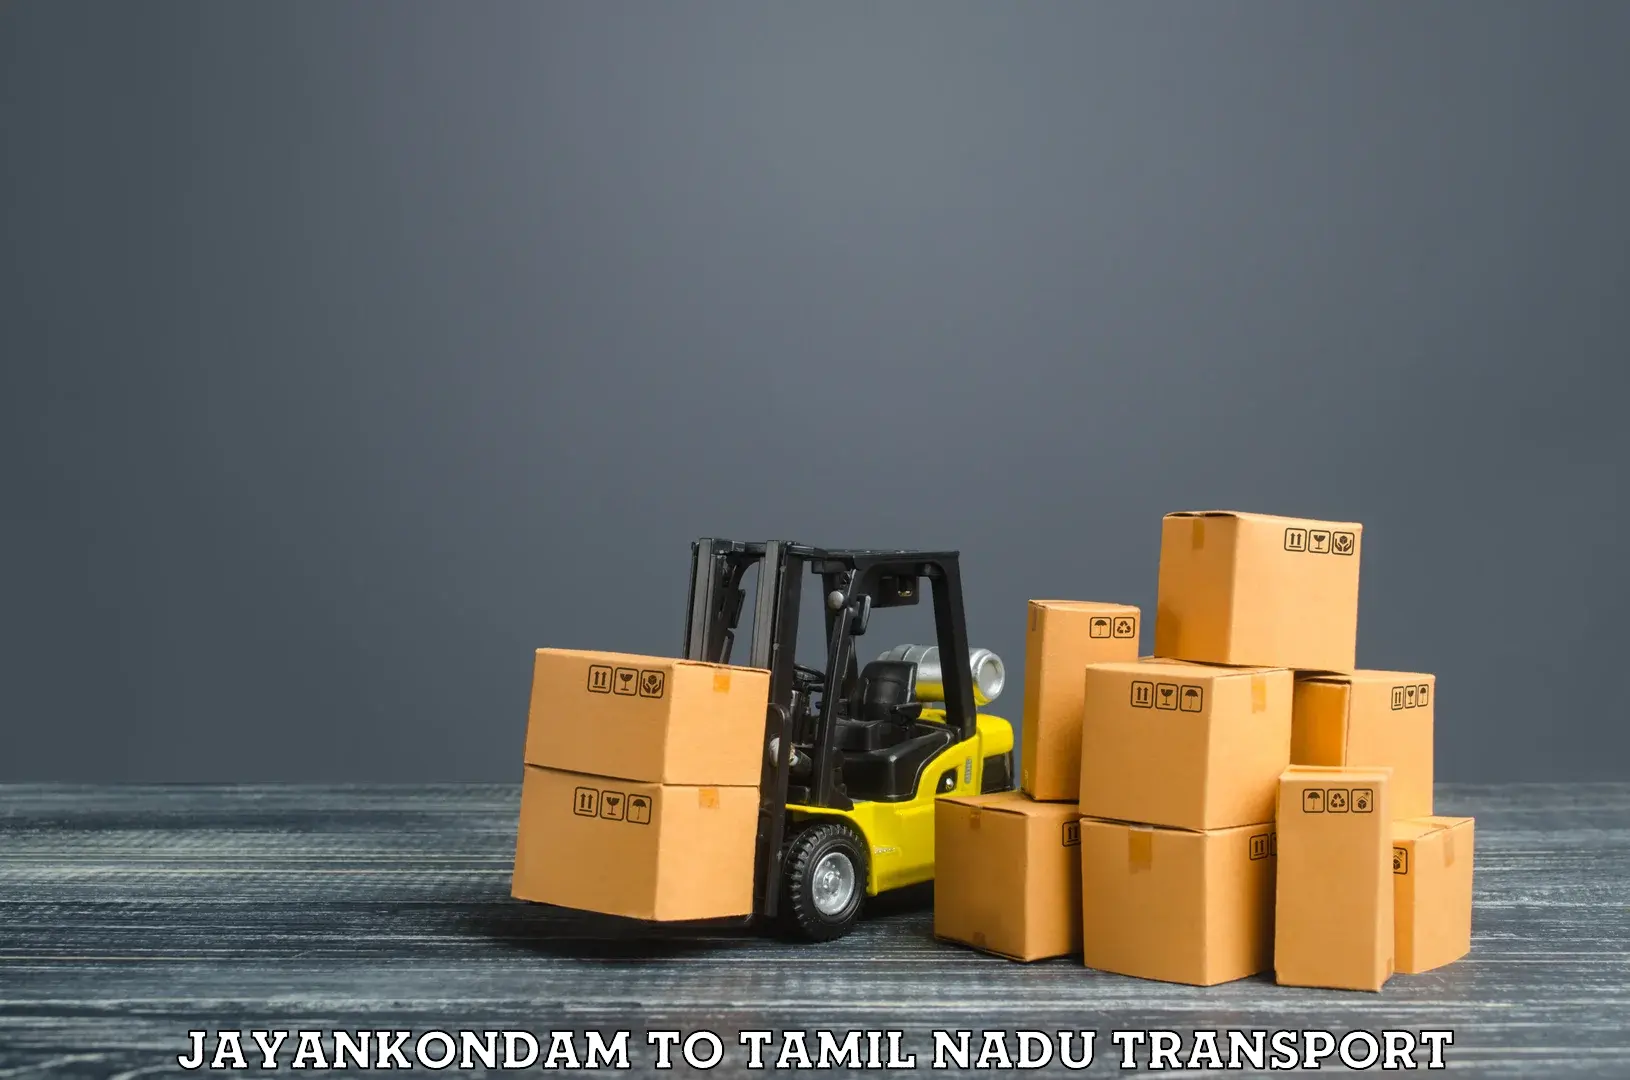 Furniture transport service Jayankondam to Tamil Nadu